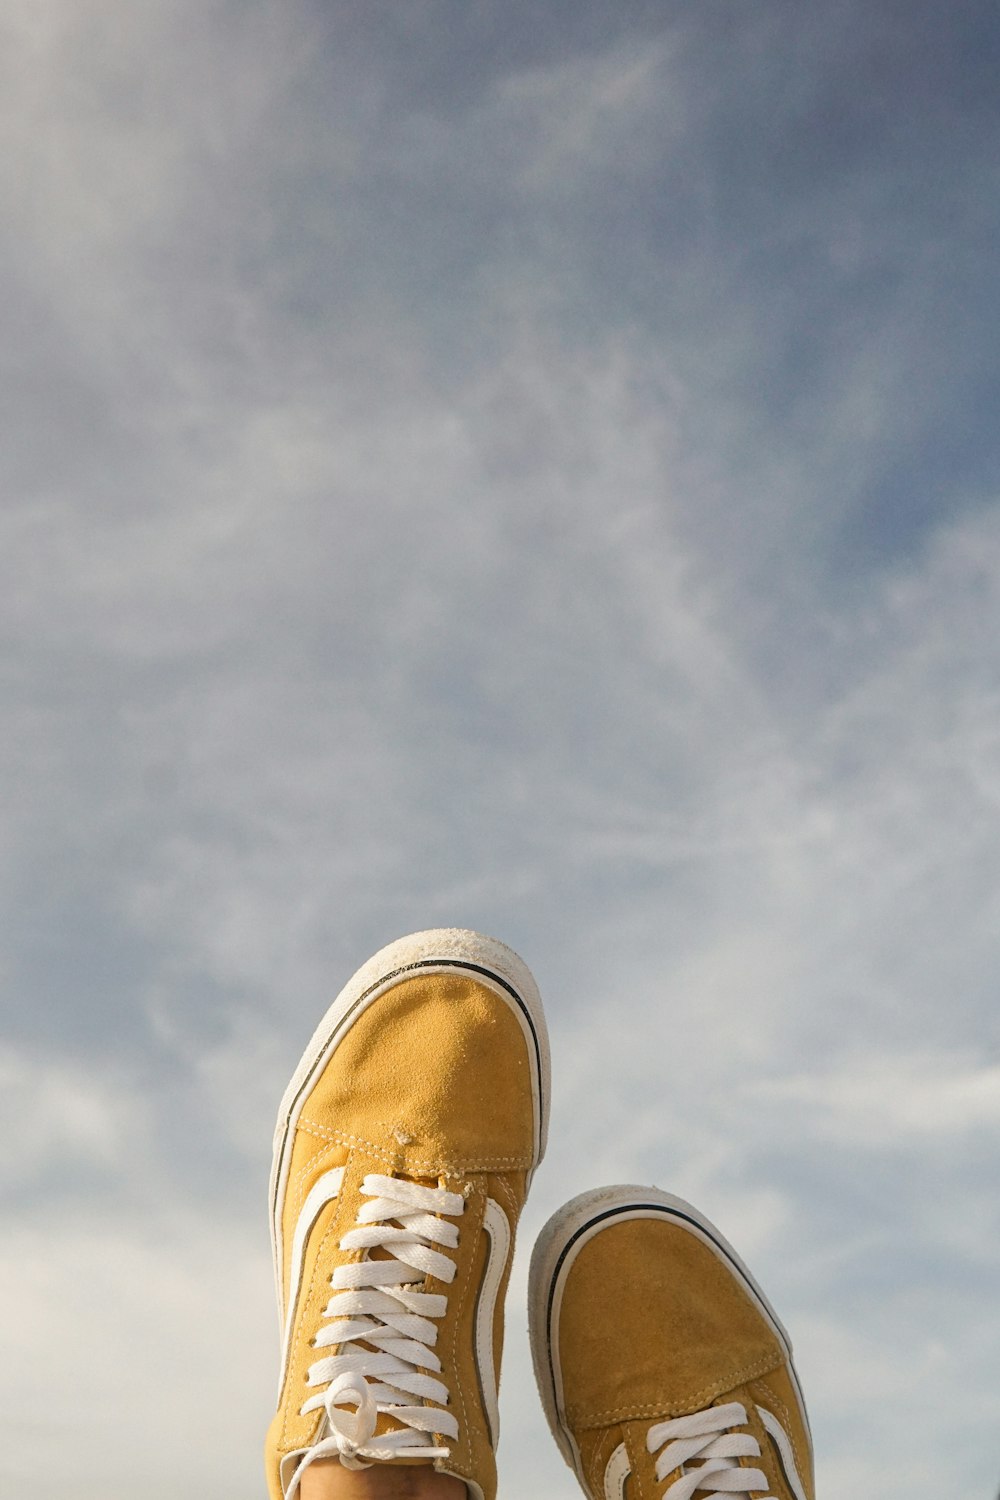 les pieds d’une personne avec des chaussures jaunes debout sur un rebord